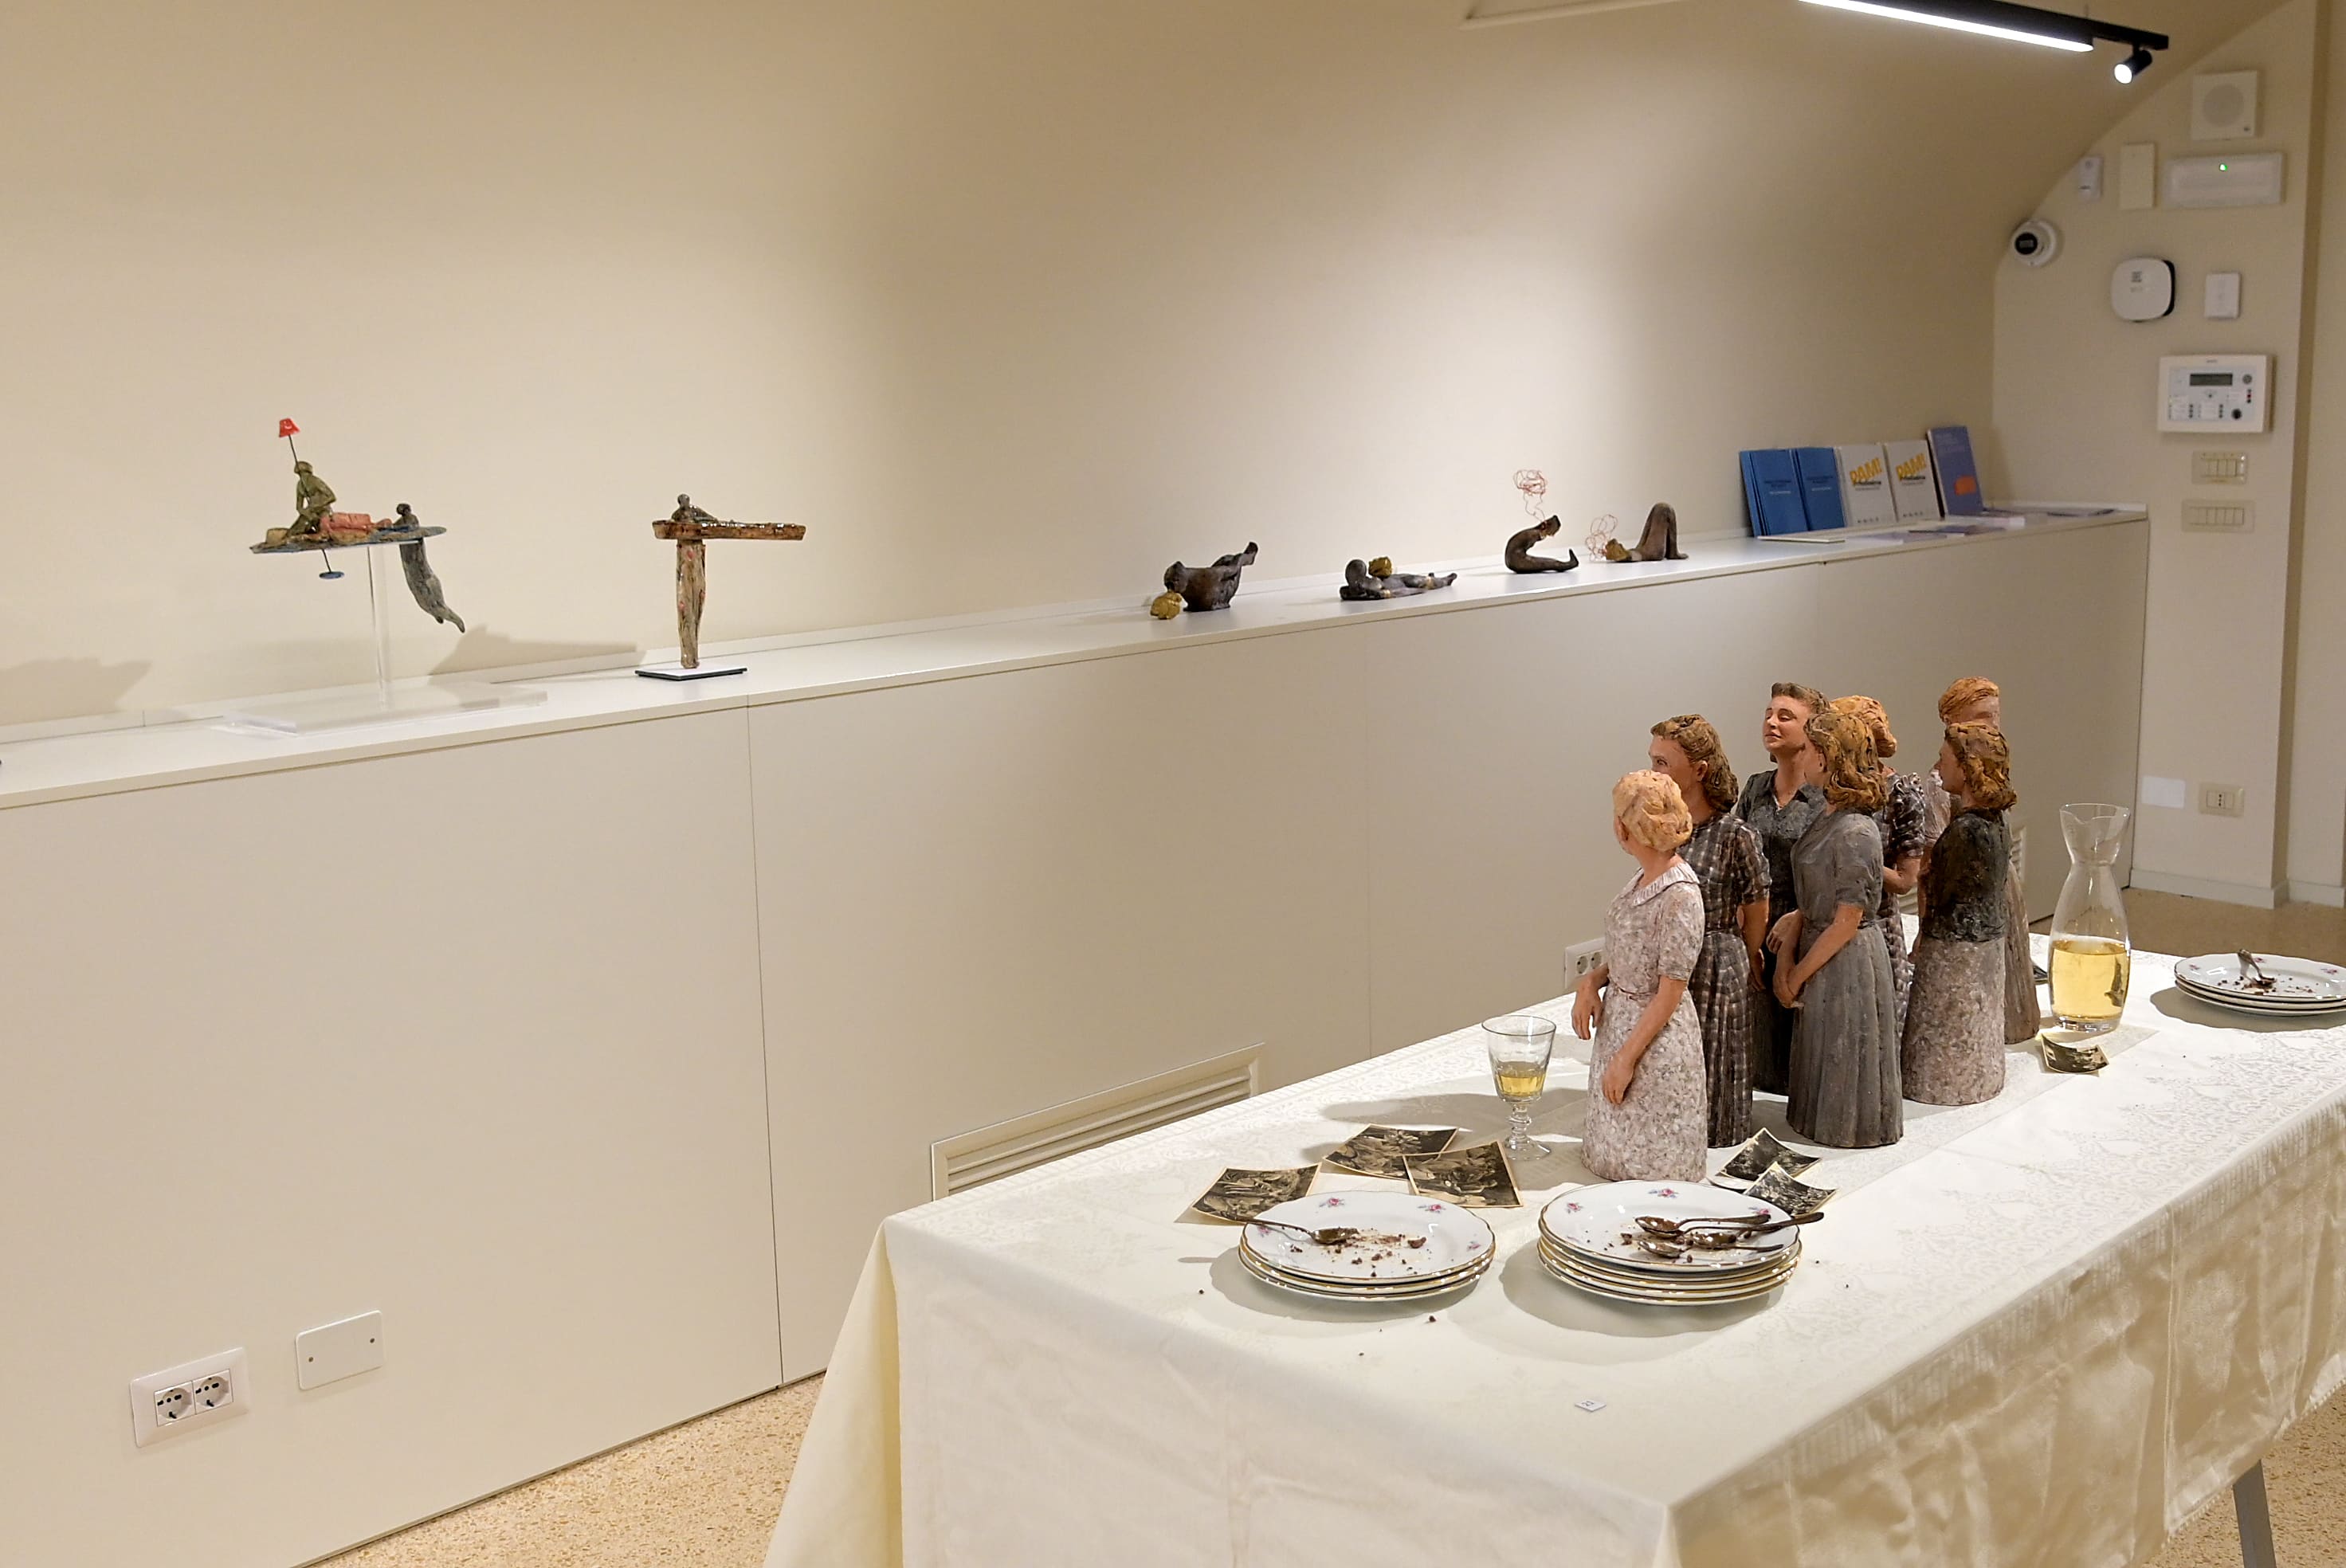 Tellus – Nuova figurazione nella ceramica contemporanea, Visione parziale dell'allestimento, Castelnuovo Rangone, 2024, Photo credit Mauro Terzi